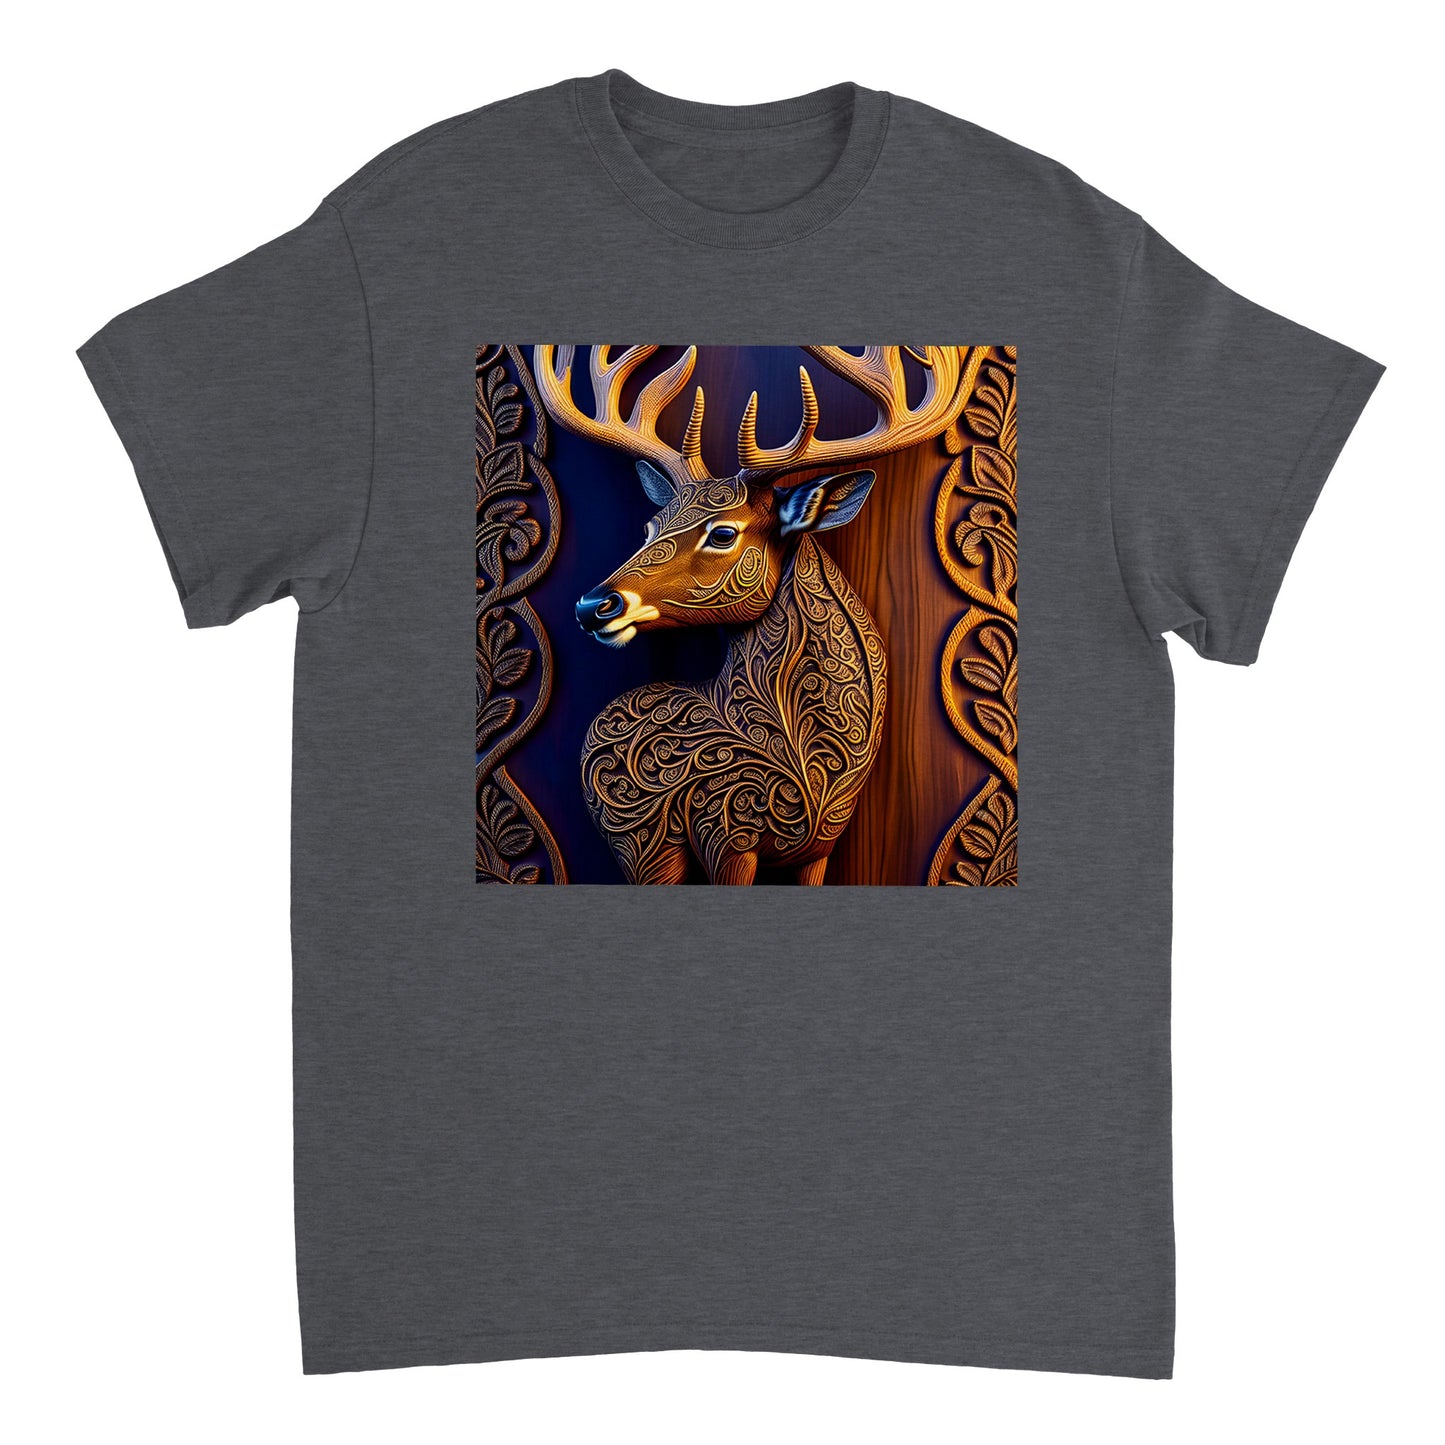 3D Wooden Animal Art - Heavyweight Unisex Crewneck T-shirt 78